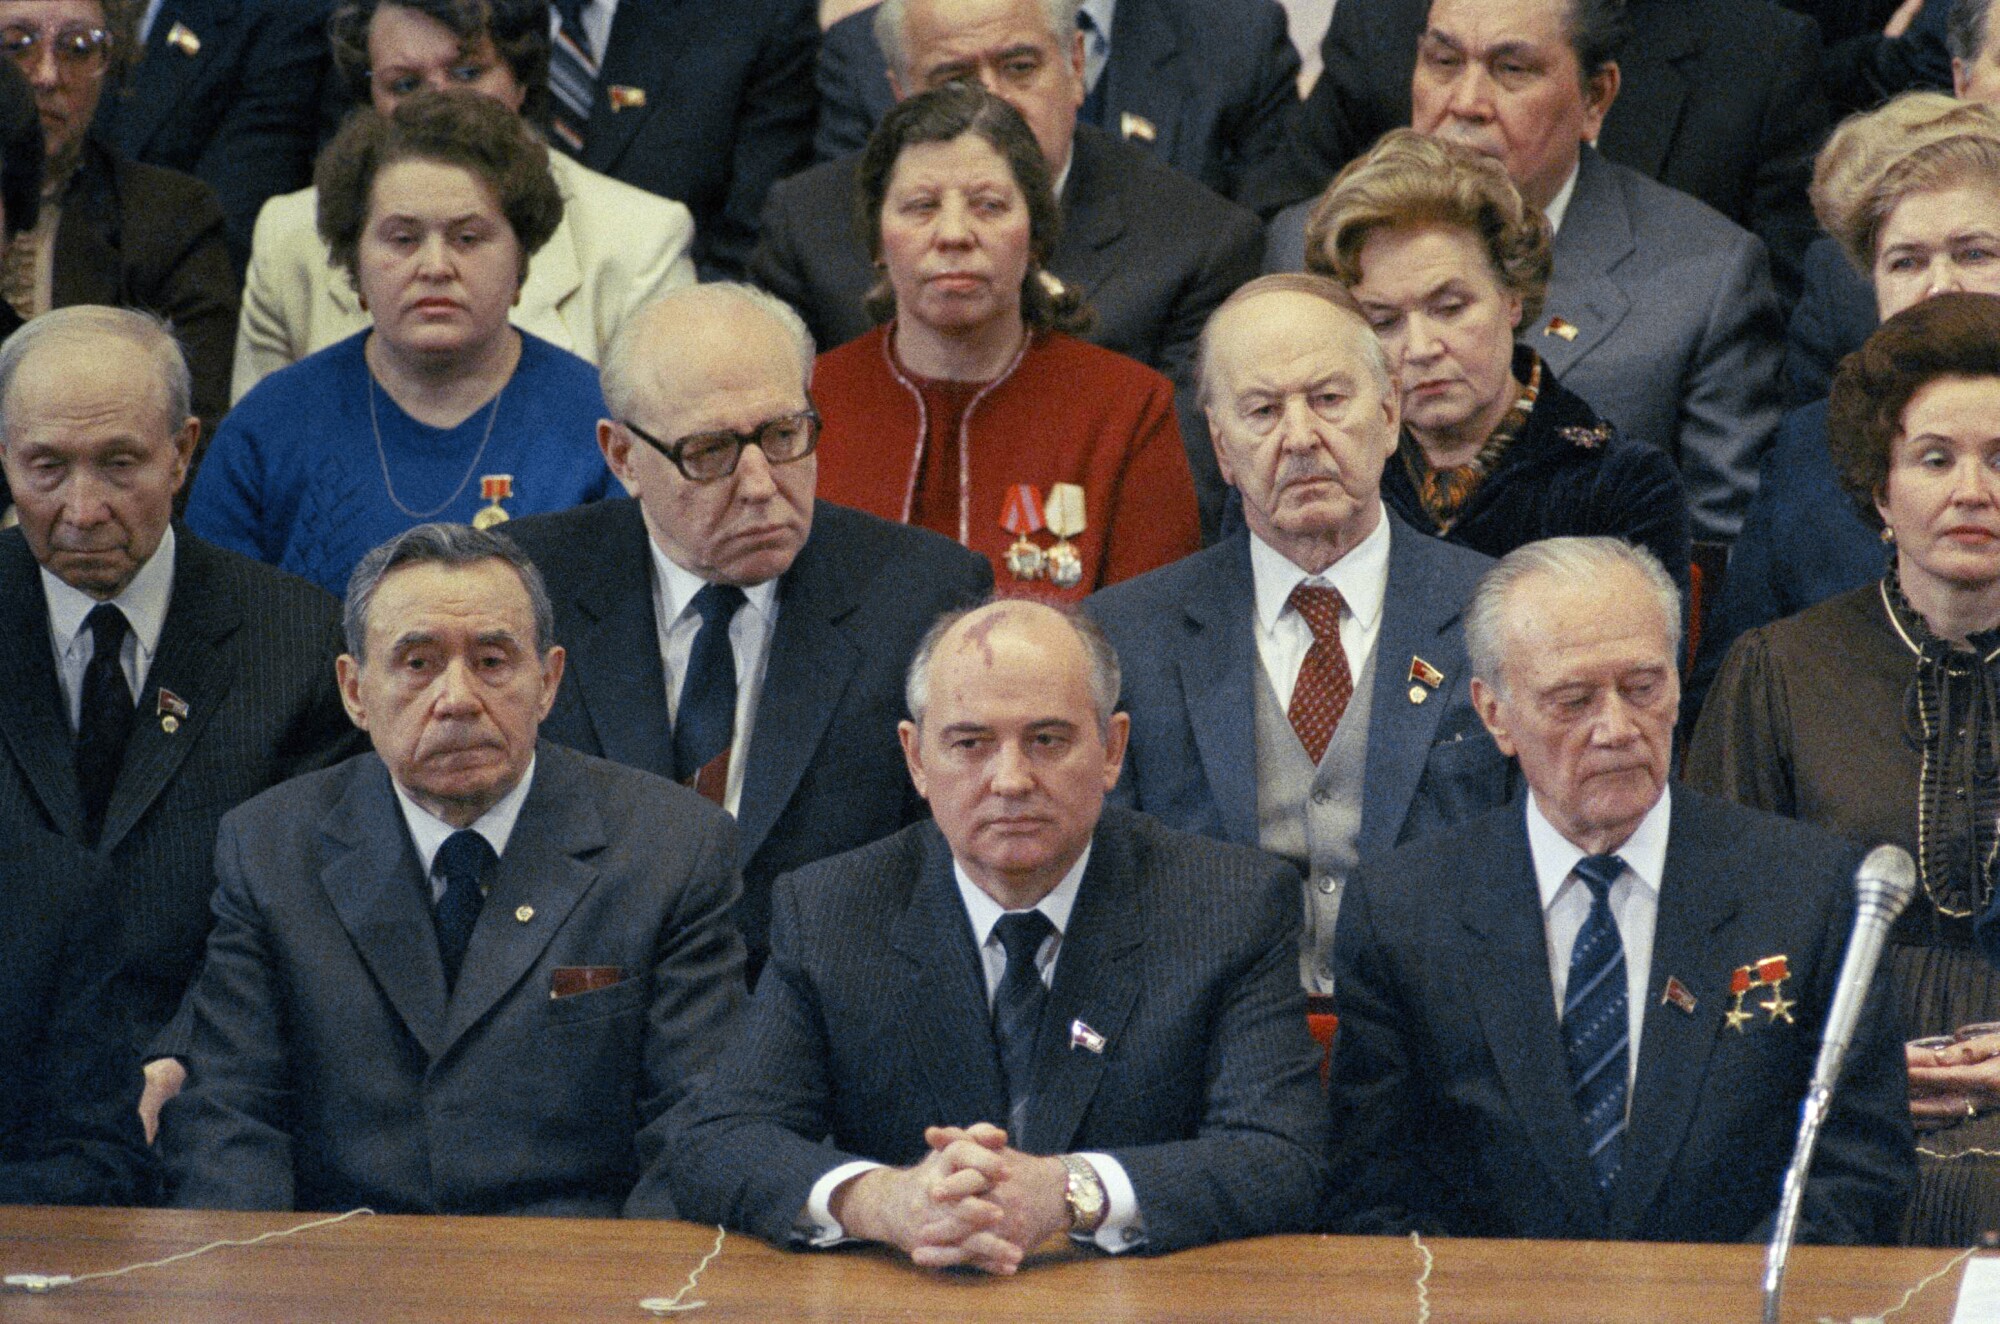 Mihail Gorbaçov, merkez, Bolşoy Tiyatrosu'ndaki Dünya Kadınlar Günü Galasına katılıyor 